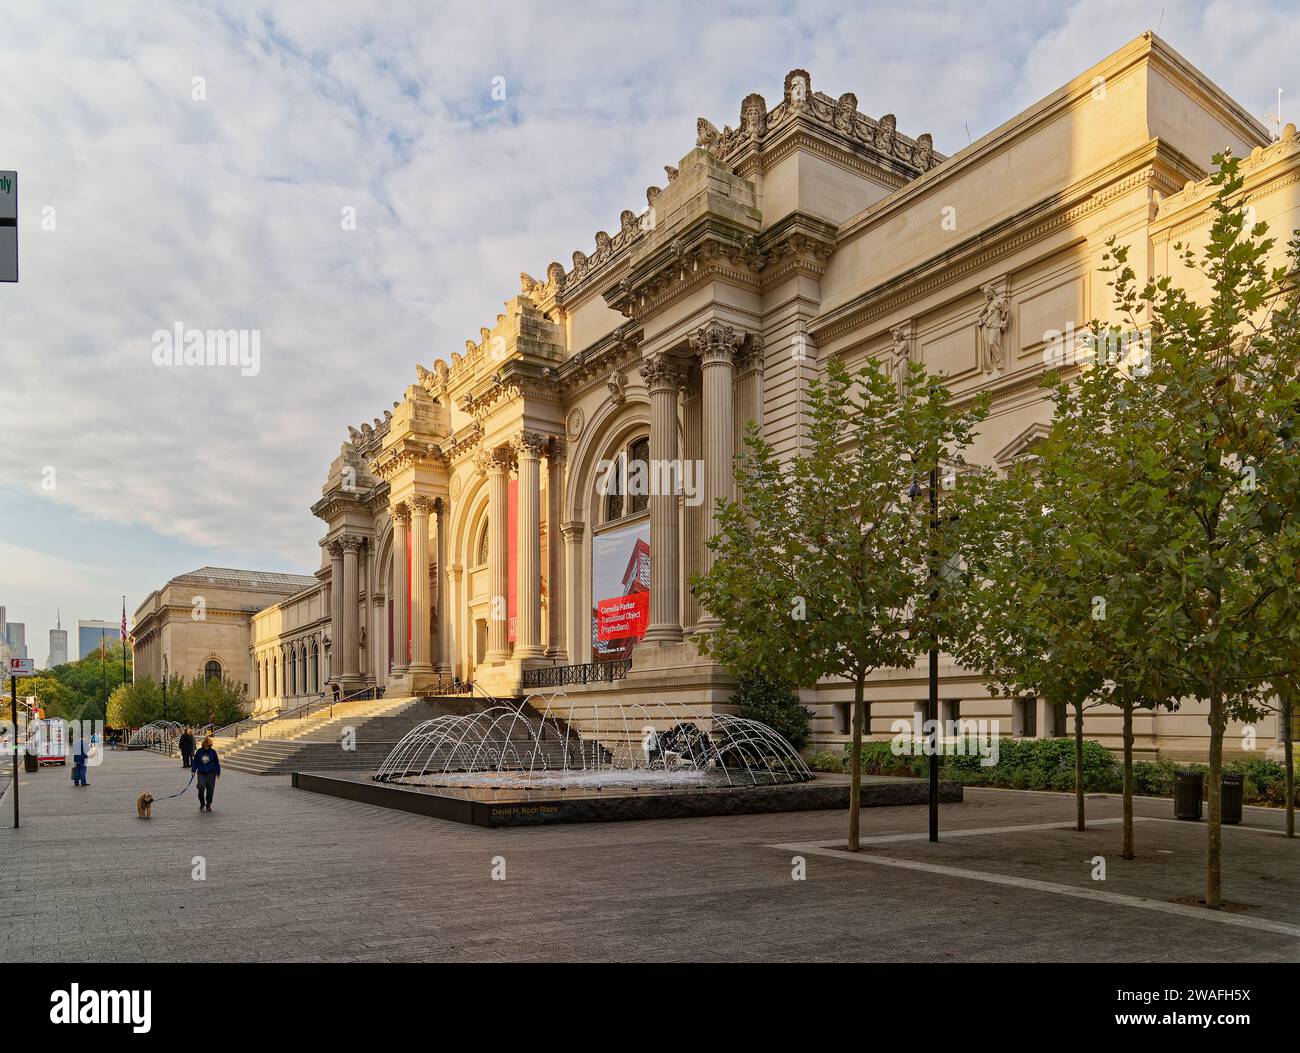 Le fontane animano il Metropolitan Museum of Art, un monumentale amalgama di architetti e stili, parte del famoso "Museum Mile" di New York. Foto Stock